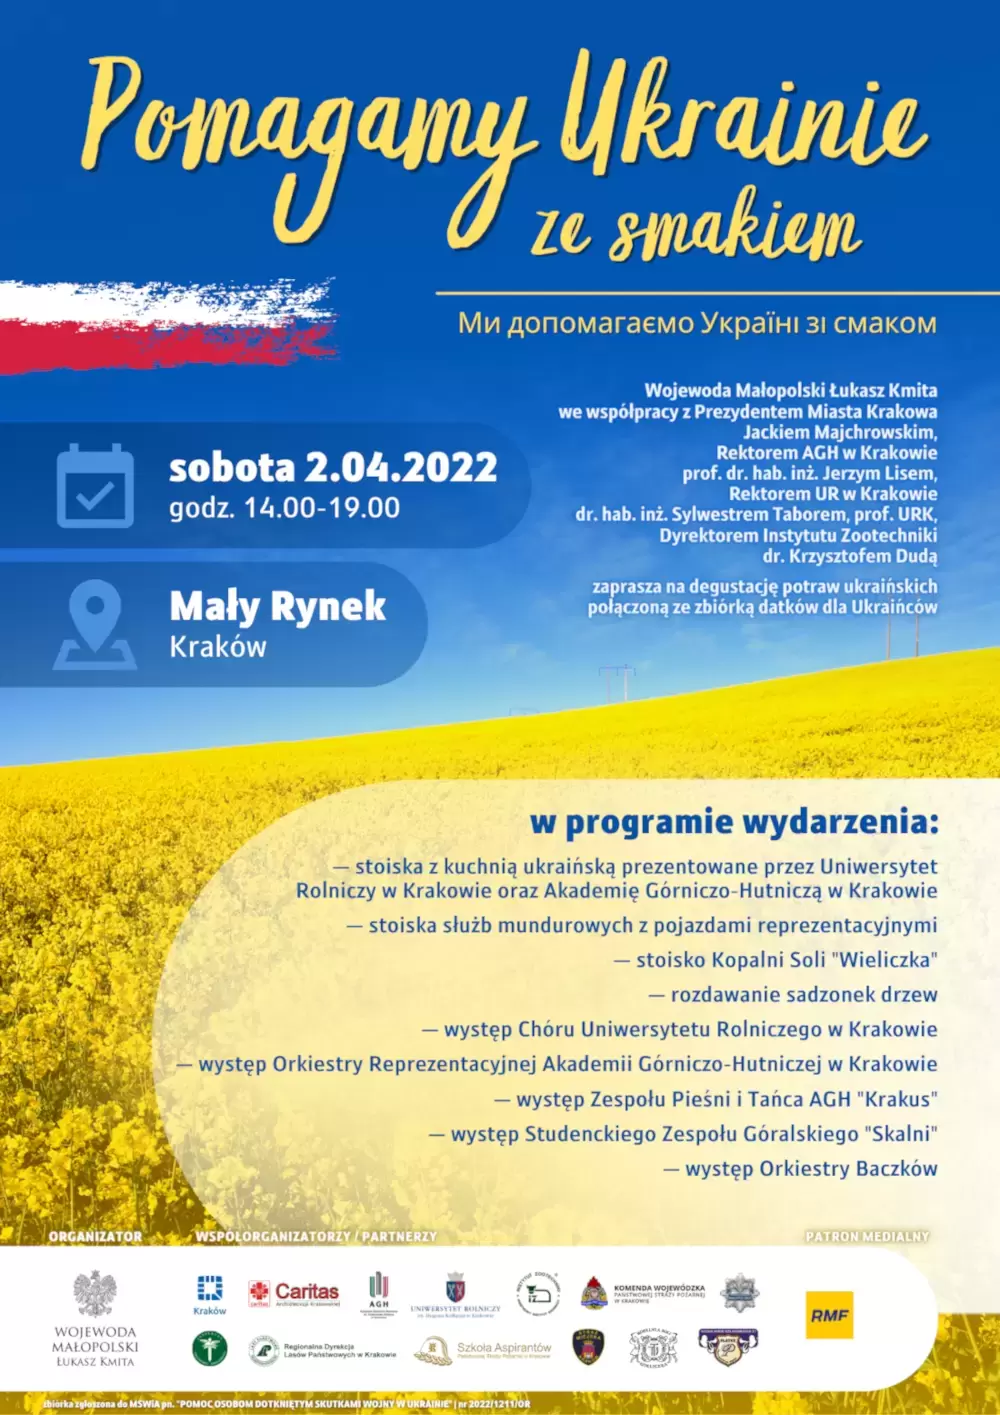 Uniwersytet Rolniczy współorganizatorem wydarzenia - Pomagamy Ukrainie ze Smakiem 